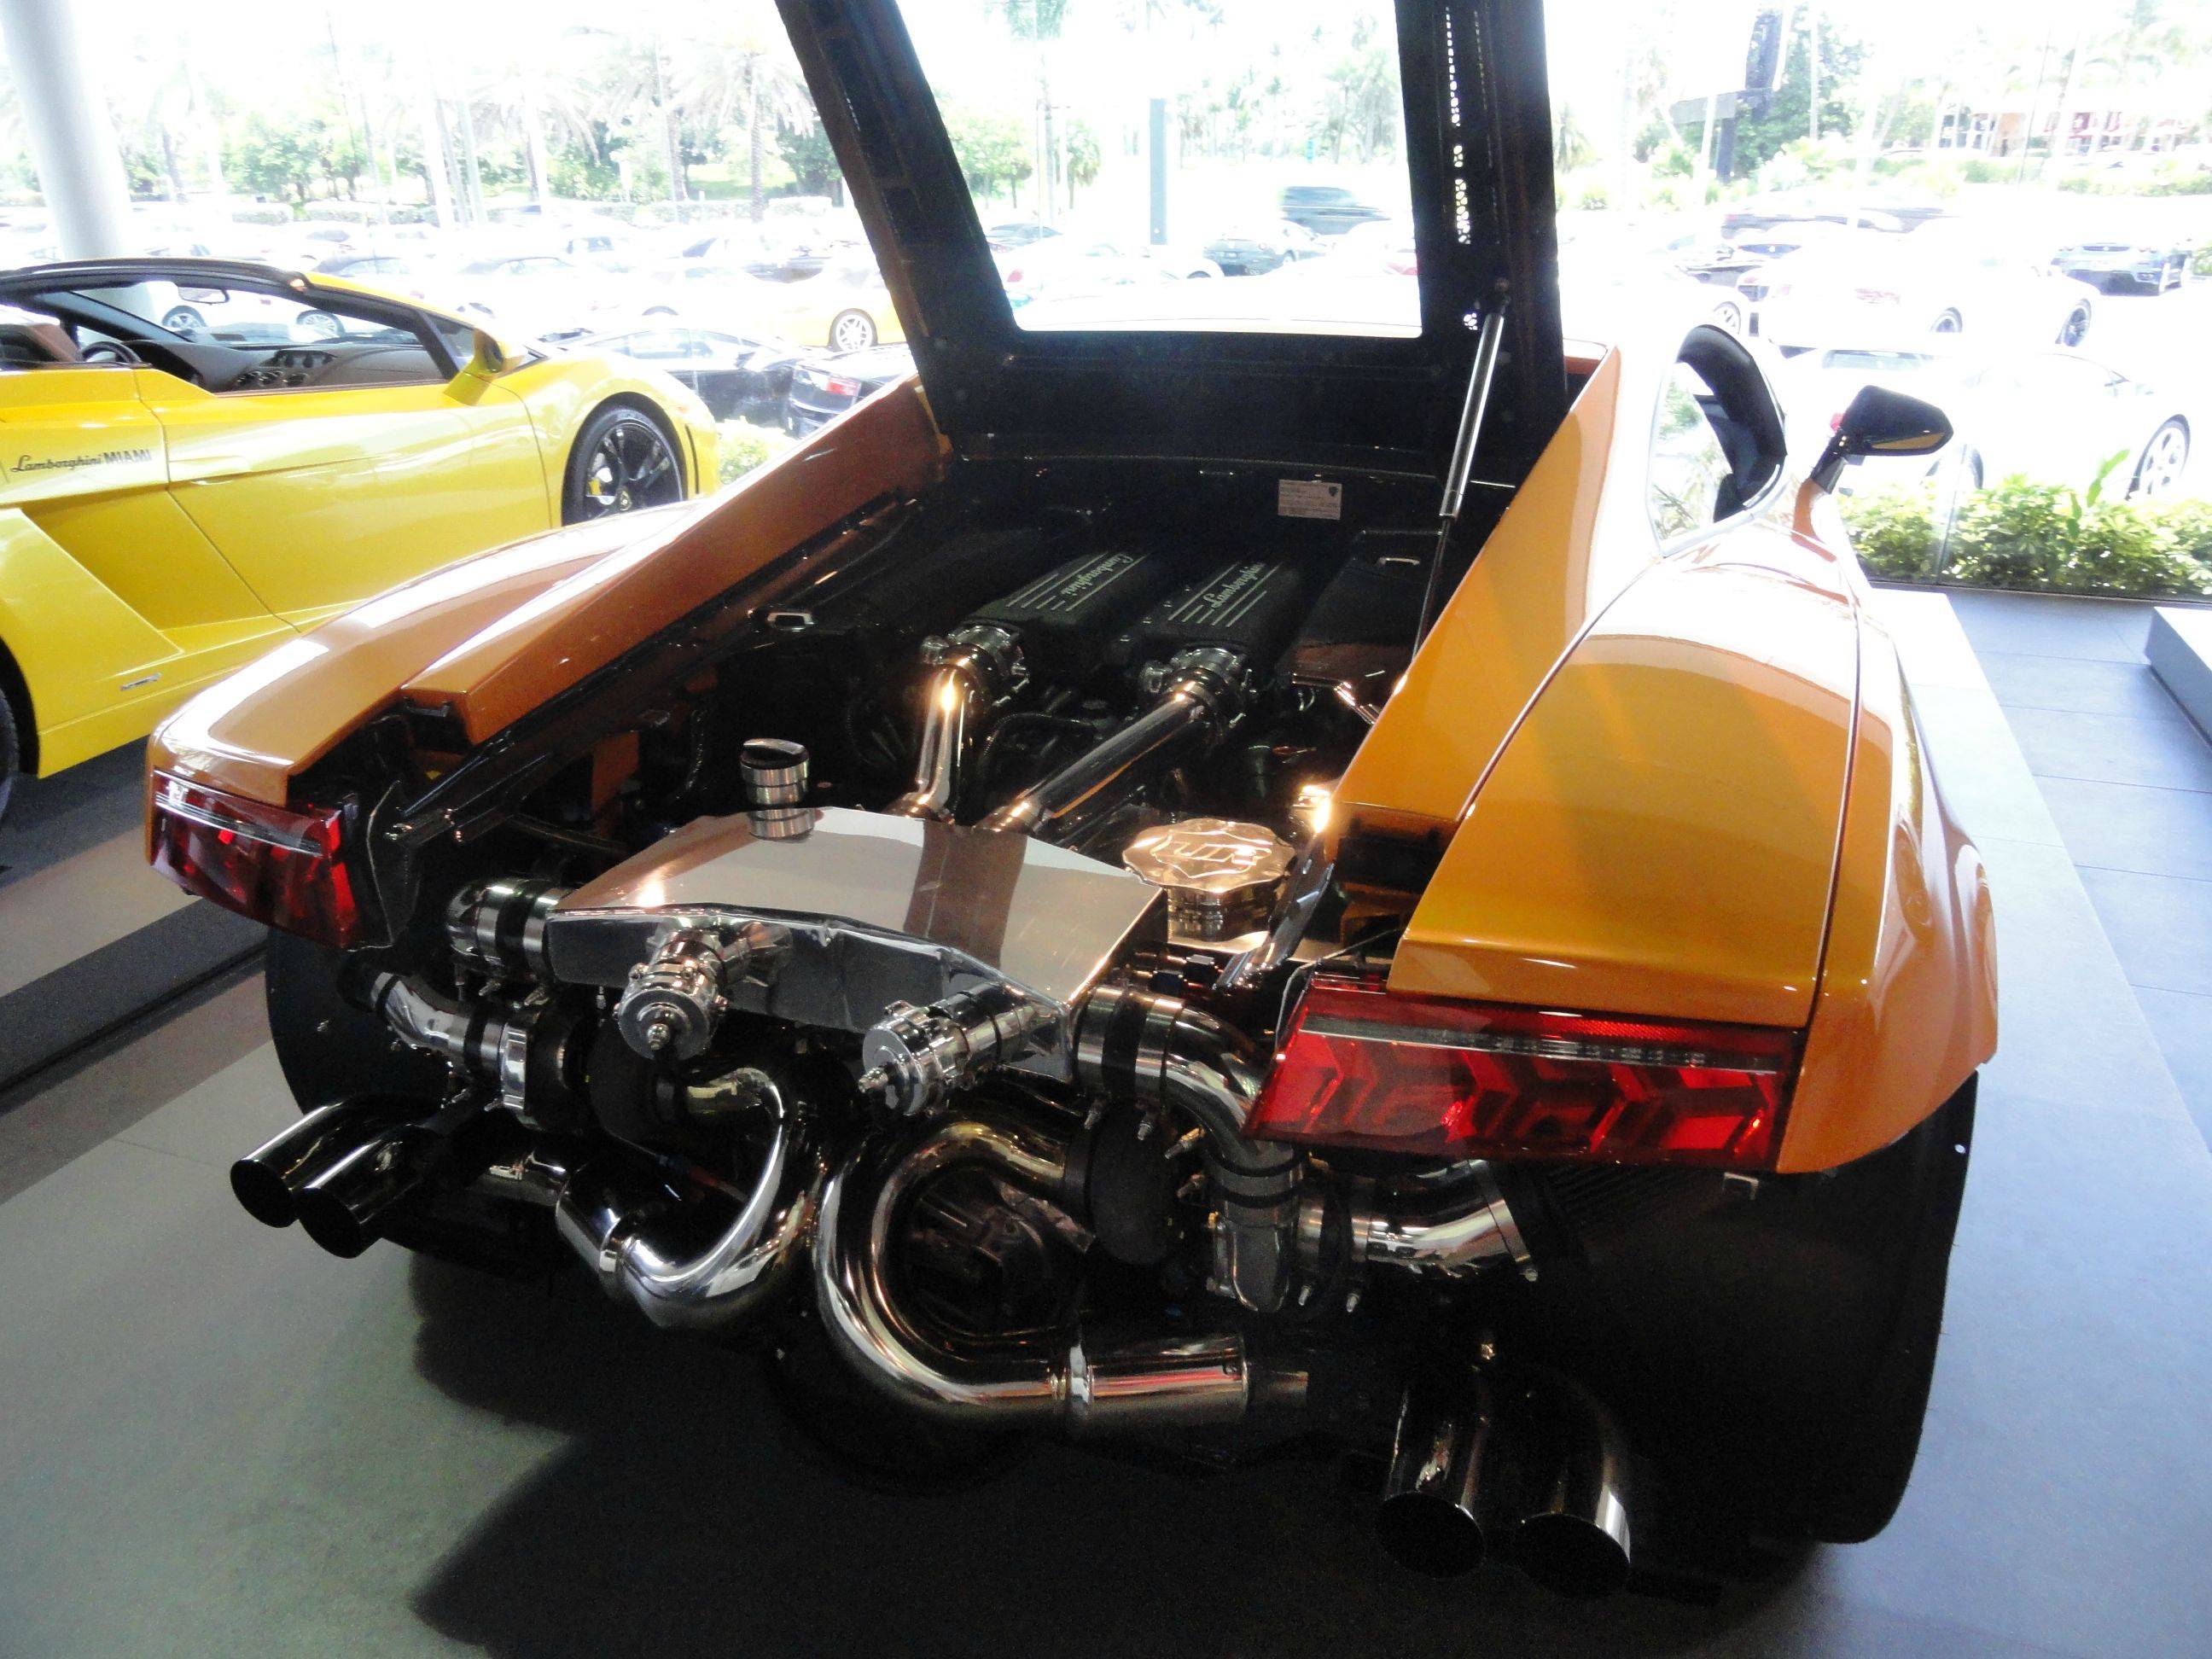 Twin turbo Lamborghini Gallardo.